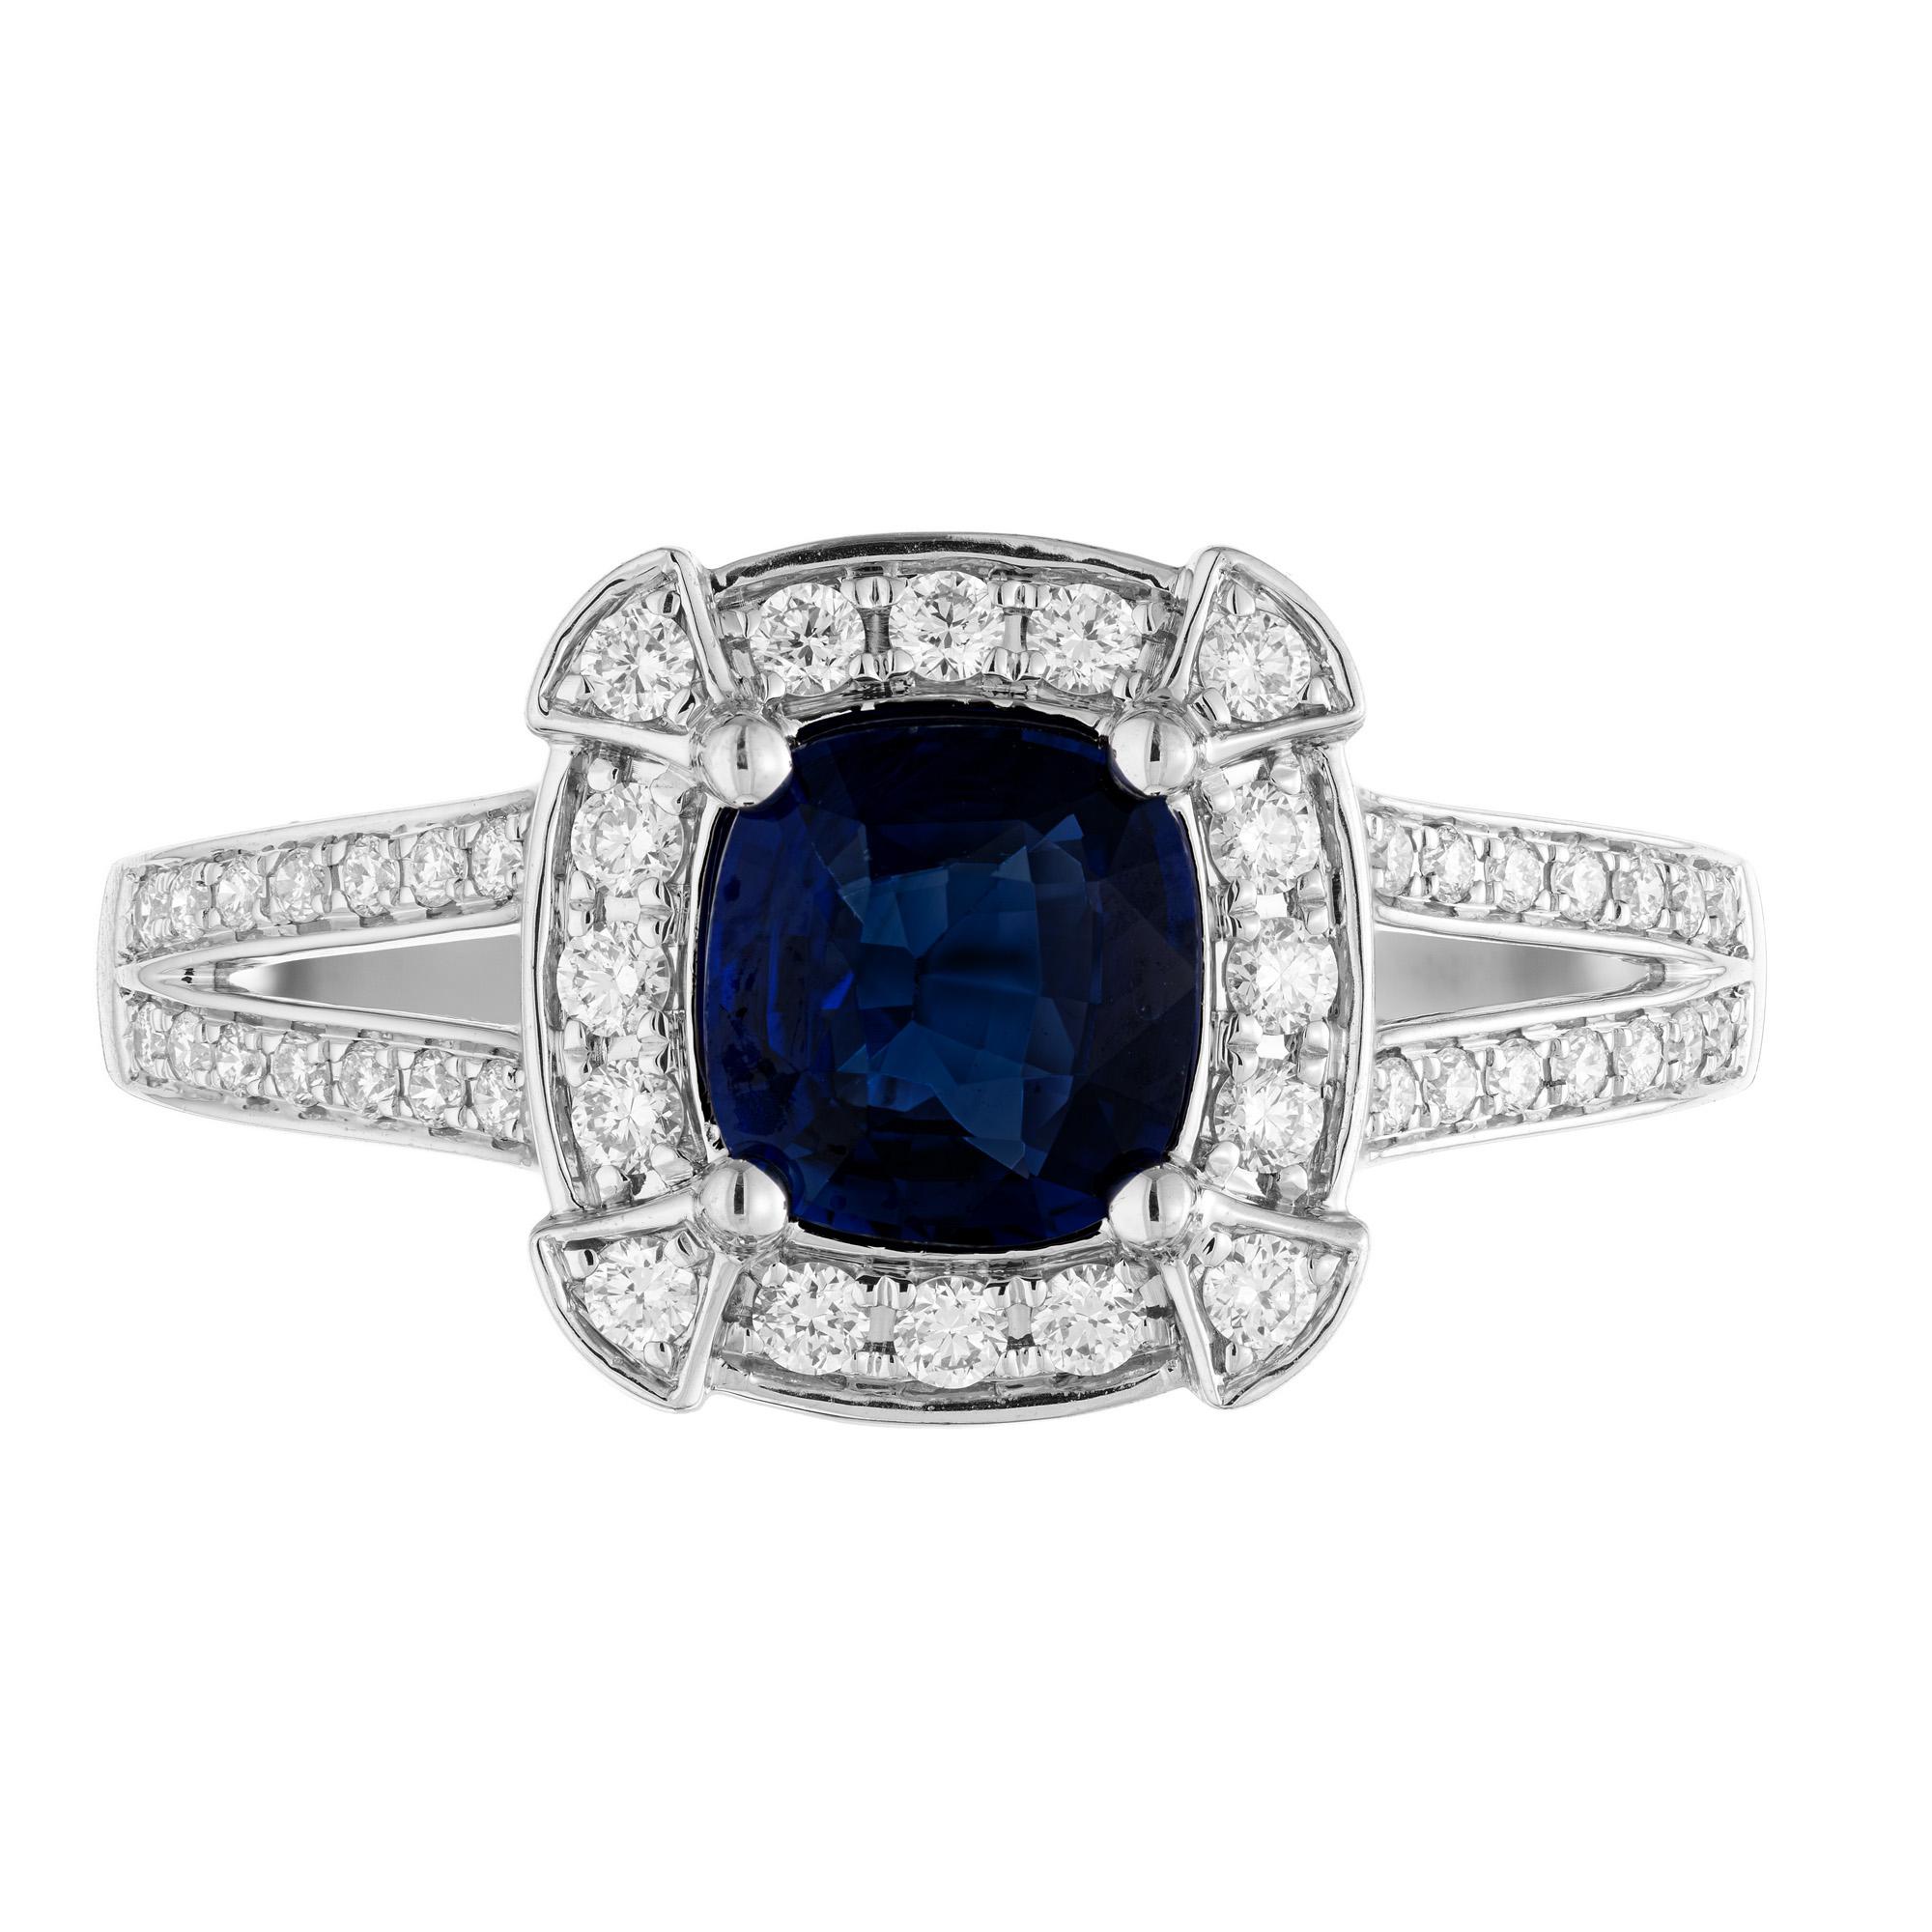 Bague de fiançailles en saphir bleu velouté certifié GIA et diamant. Cette pièce exquise commence par un saphir de 1,01ct à taille coussin, monté dans une monture à deux branches en or blanc 14k. Le diamant est rehaussé d'un halo ou de diamants